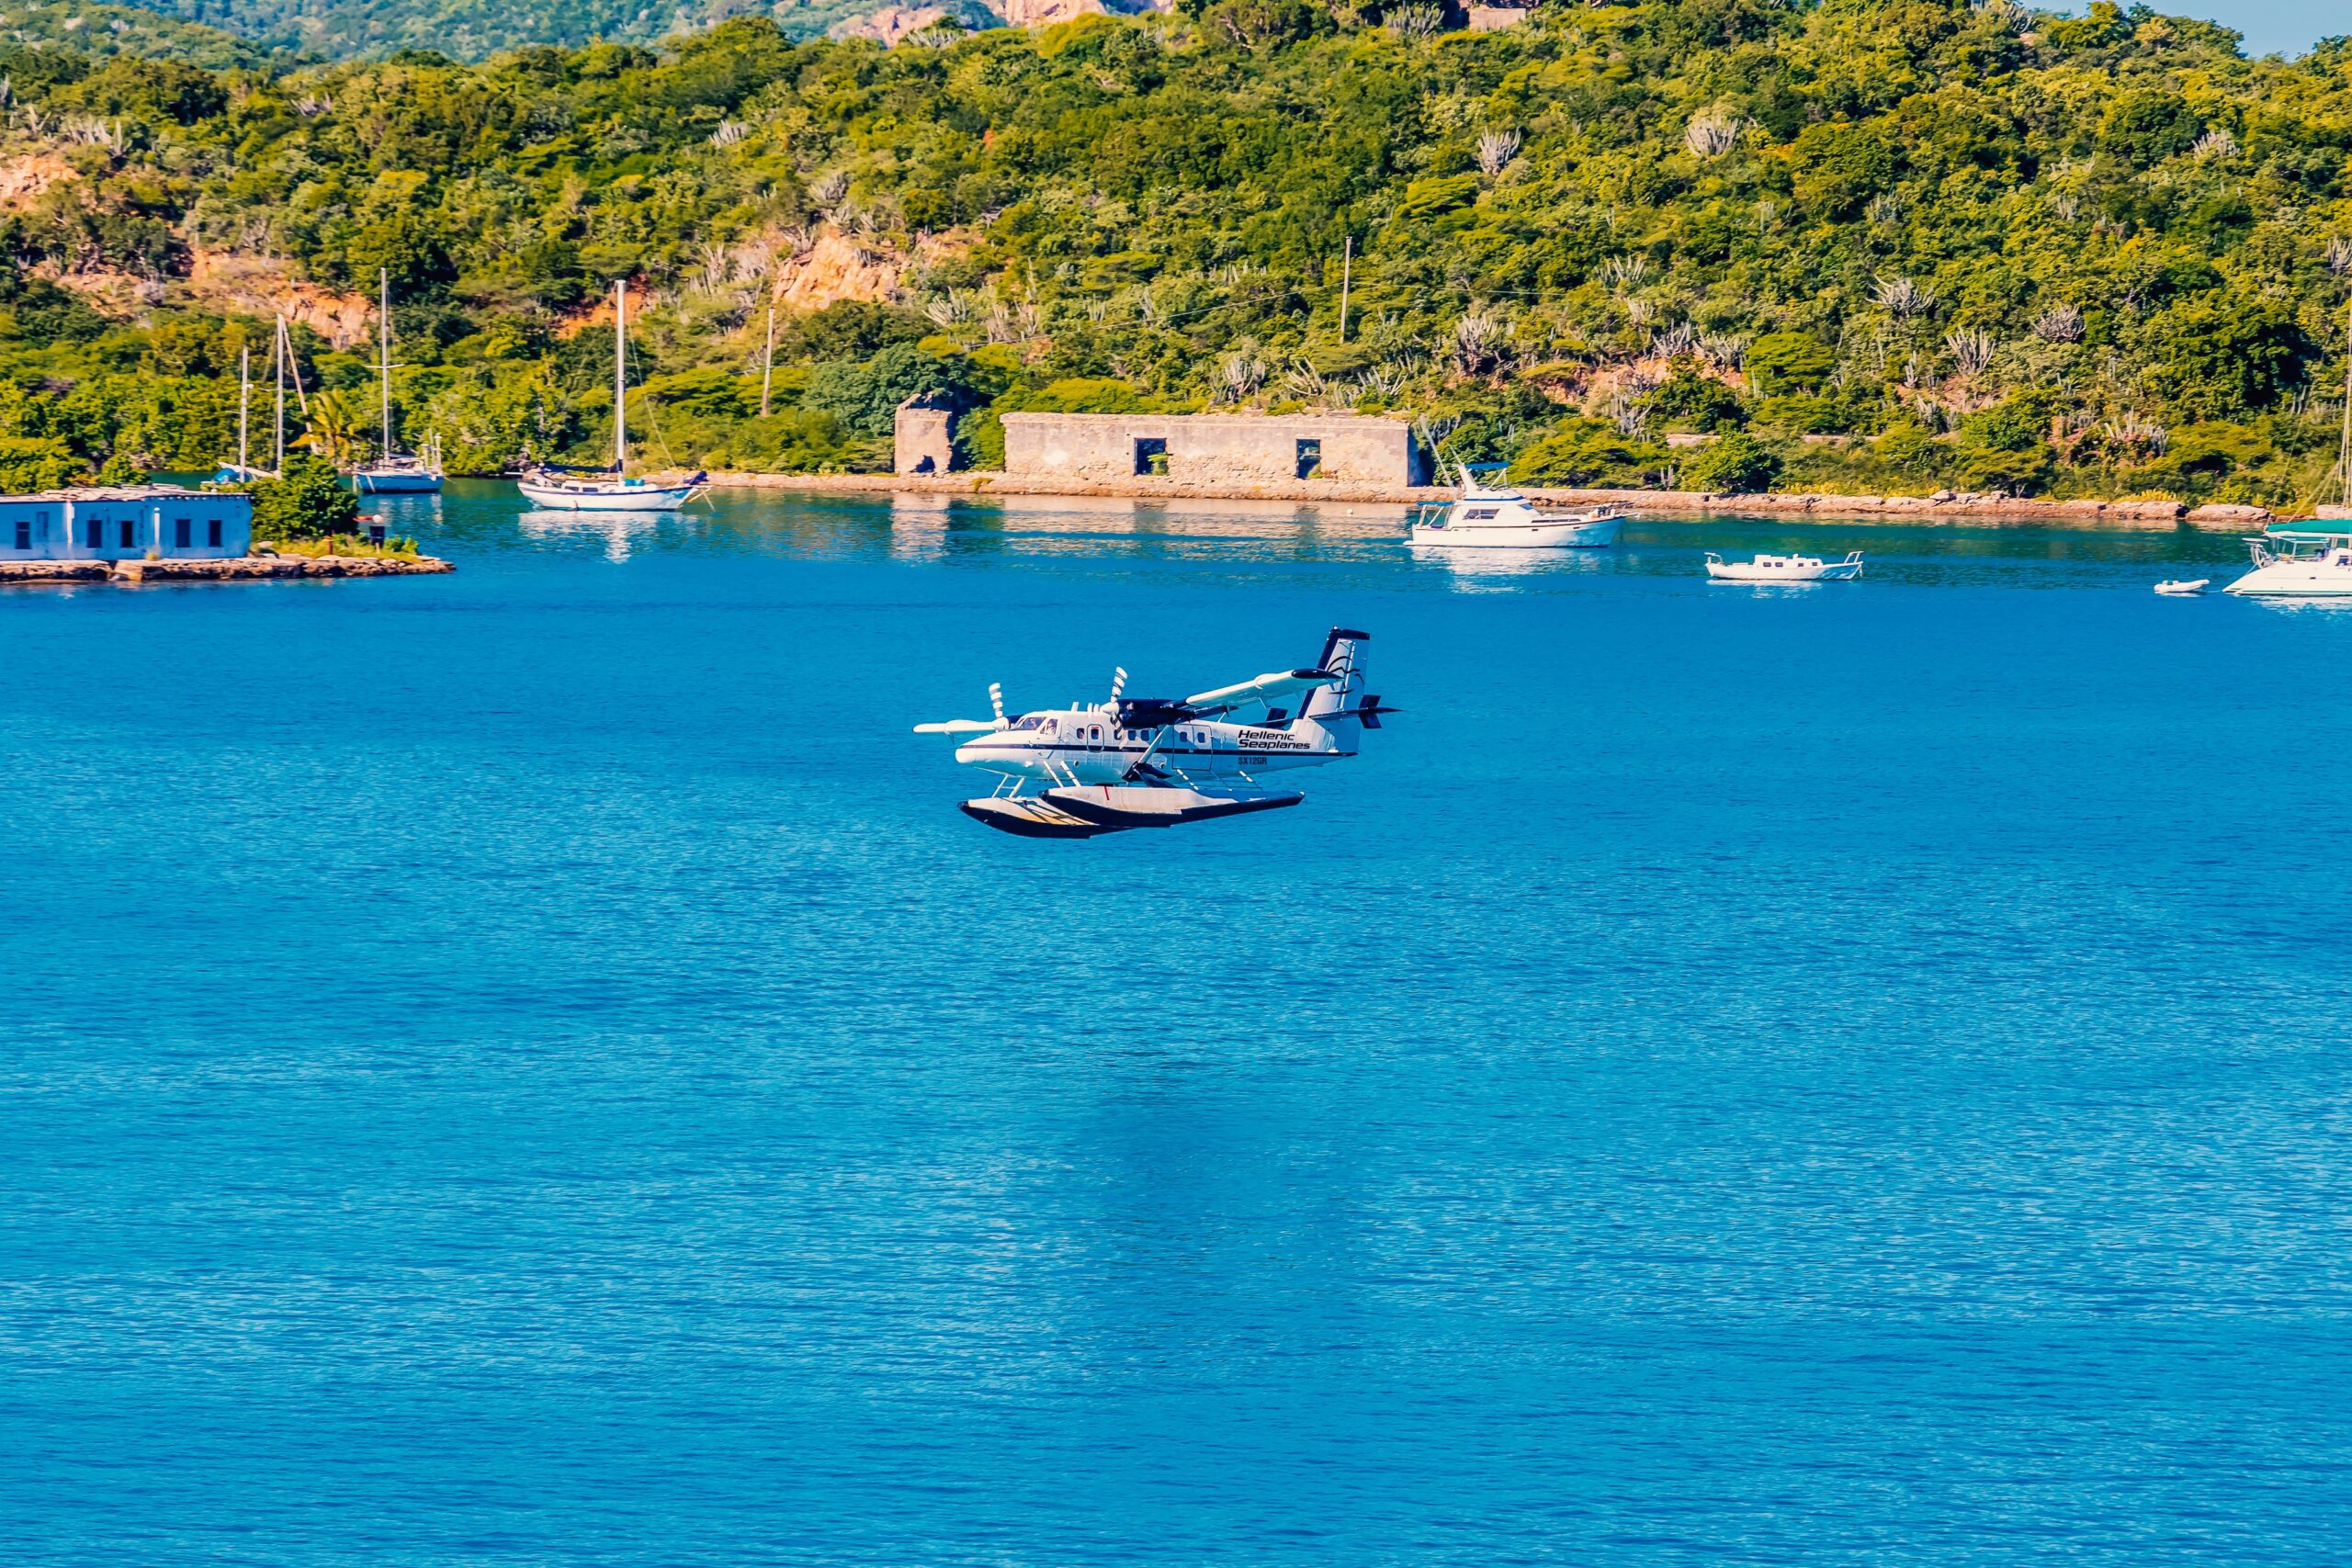 «Η Καλαμάτα αποκτάει υδατοδρόμιο με ανάδοχο την Hellenic Seaplanes!...Ξεκινάει άμεσα η κατασκευή του έργου!» 10